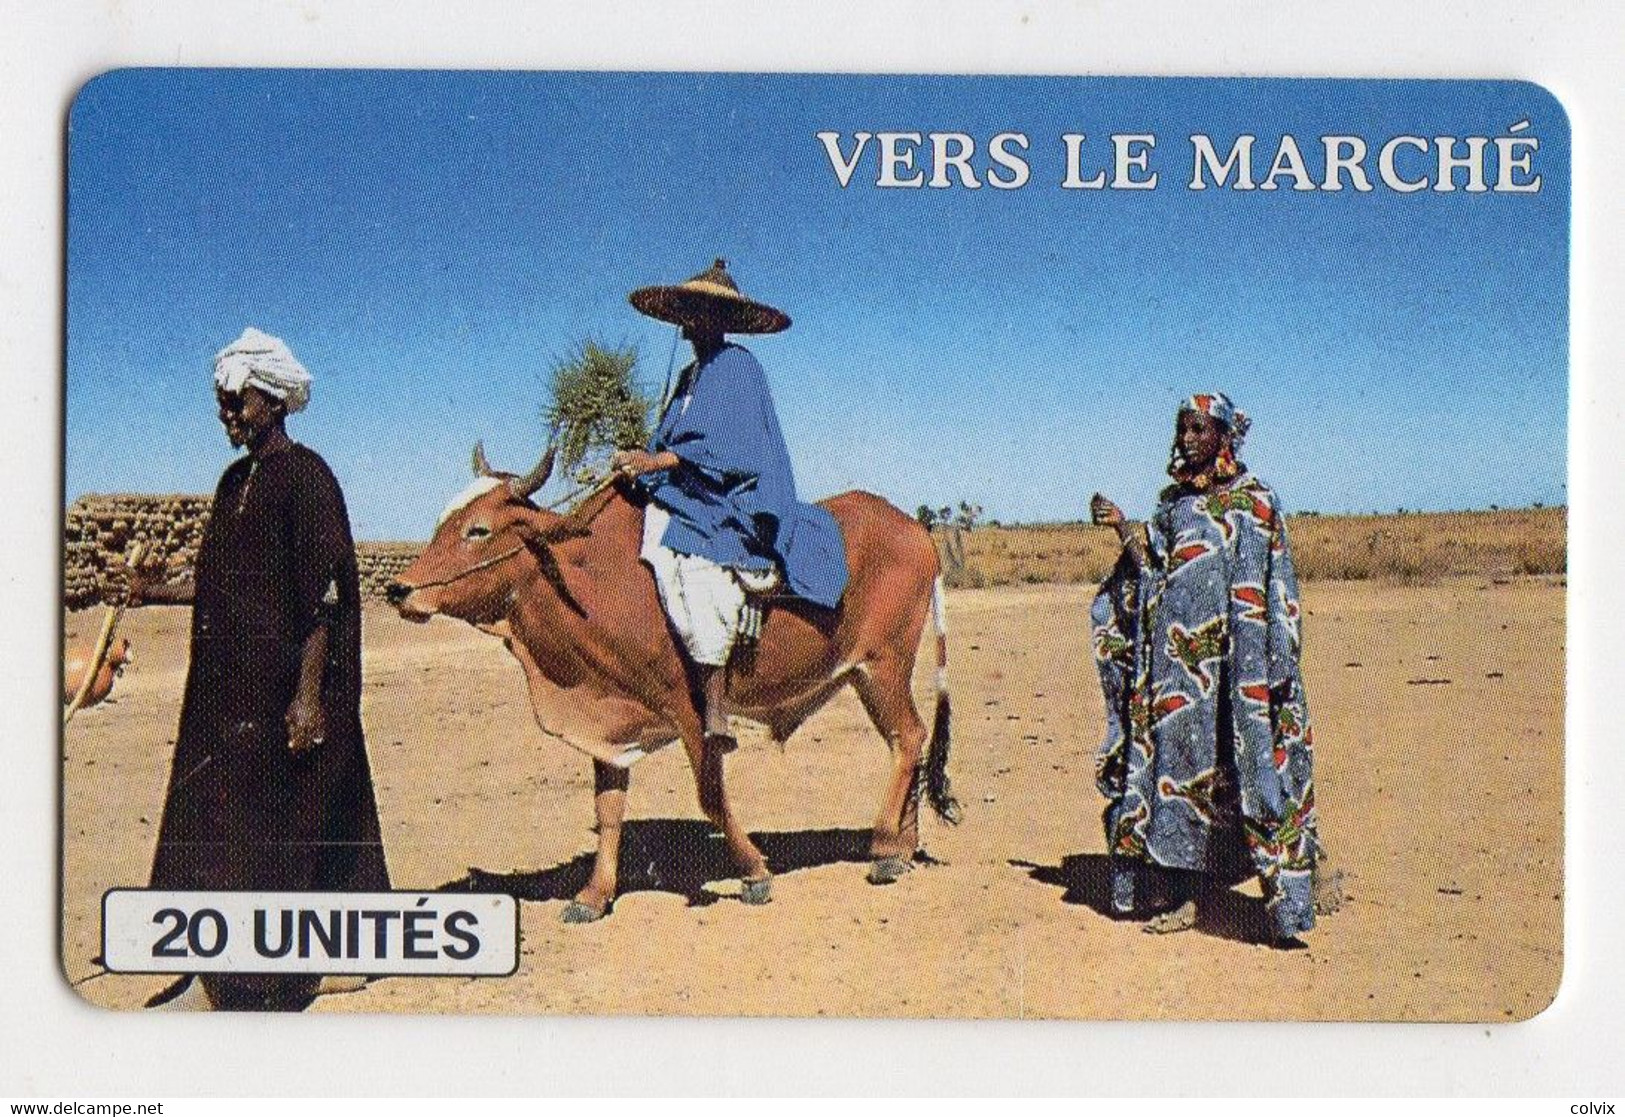 MALI REF MV CARDS MAL-34 20U VERS LE MARCHE - Mali